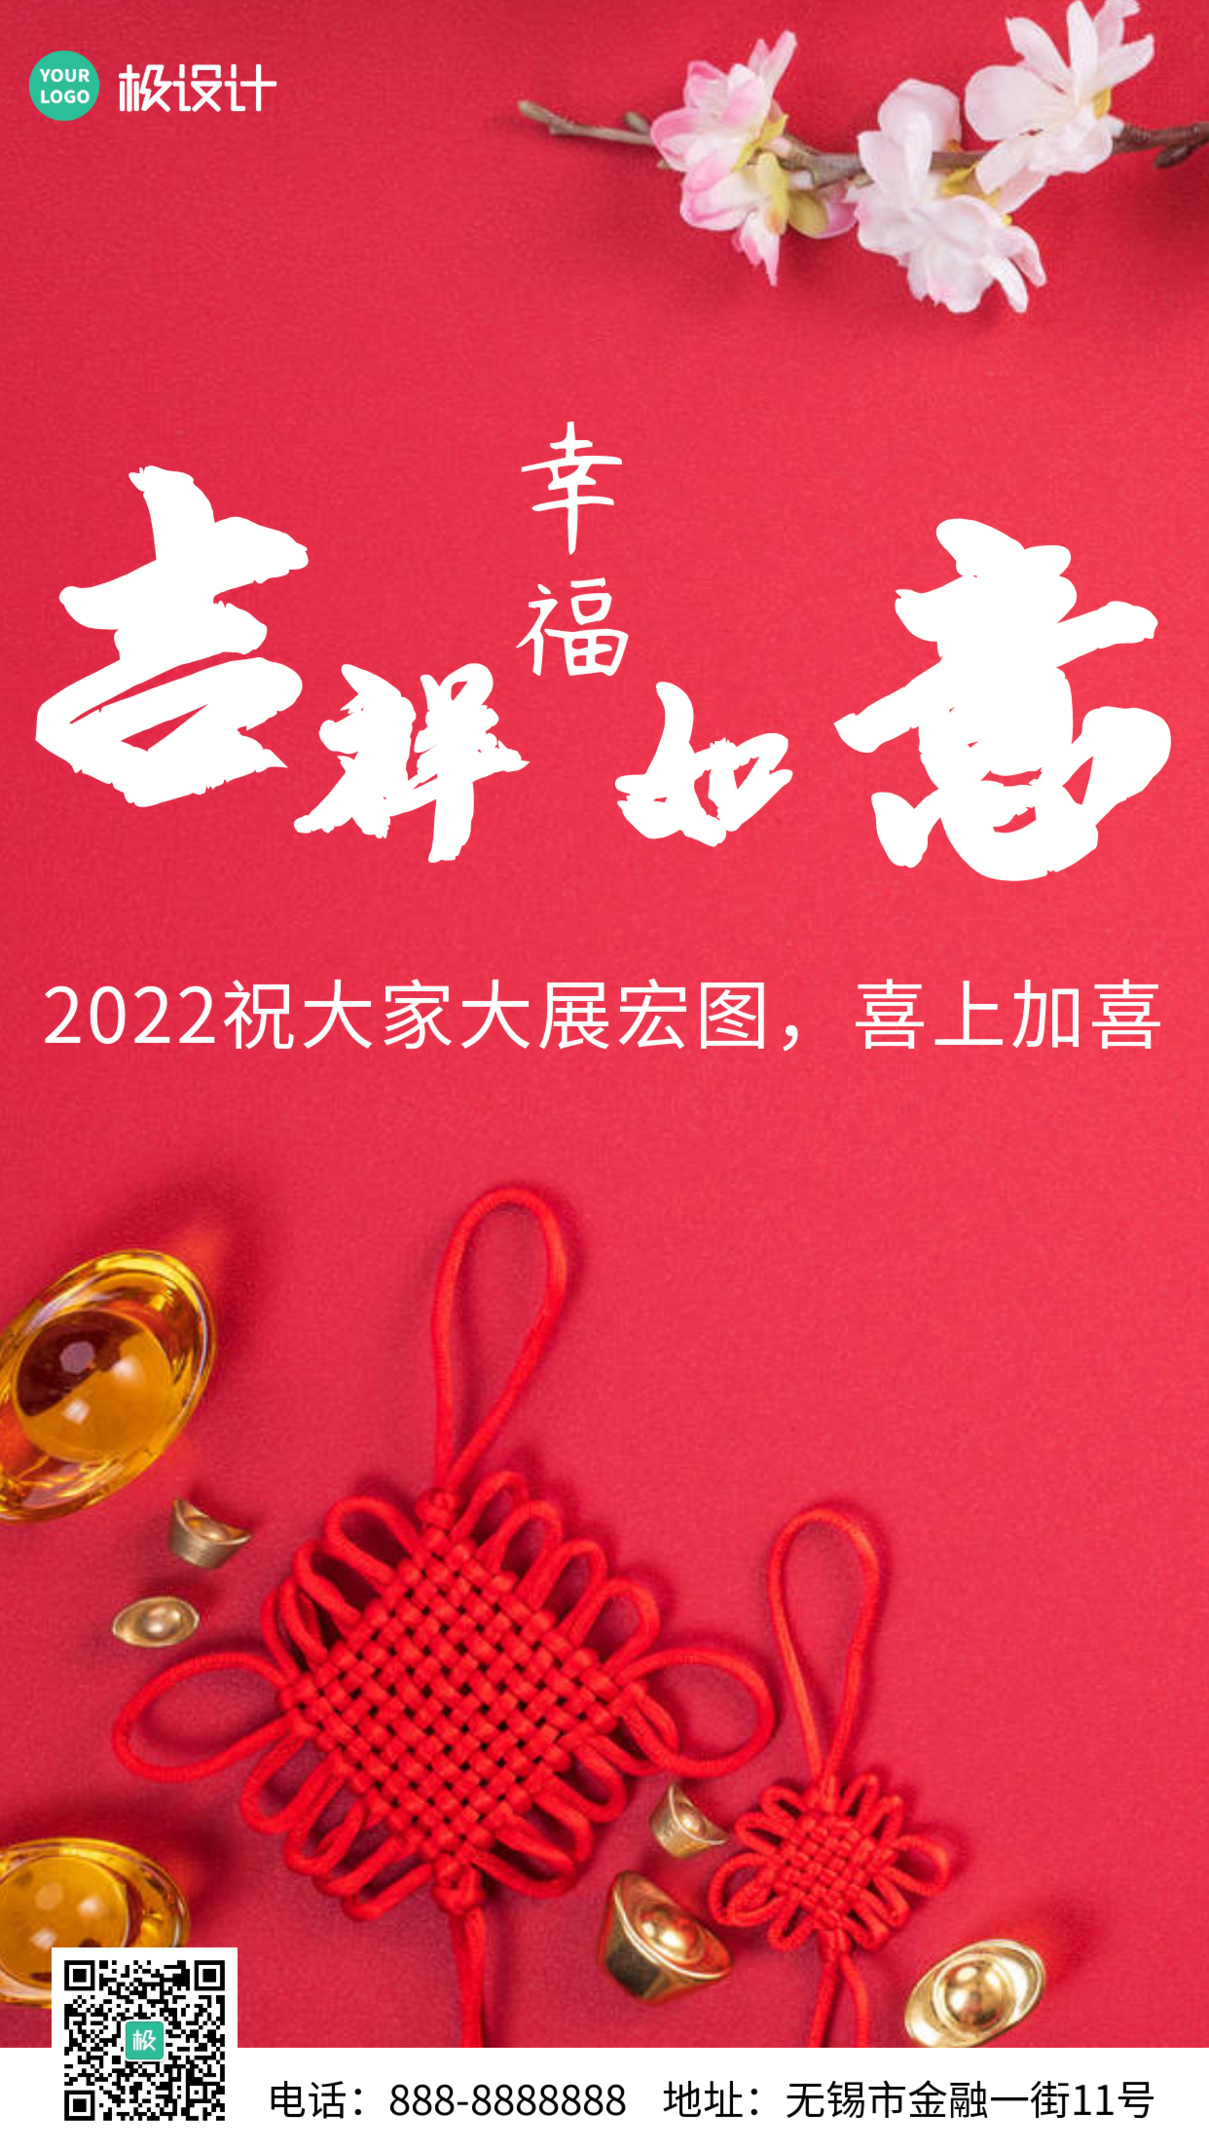 2022新年幸福吉祥如意海报红色简约大气宣传手机海报